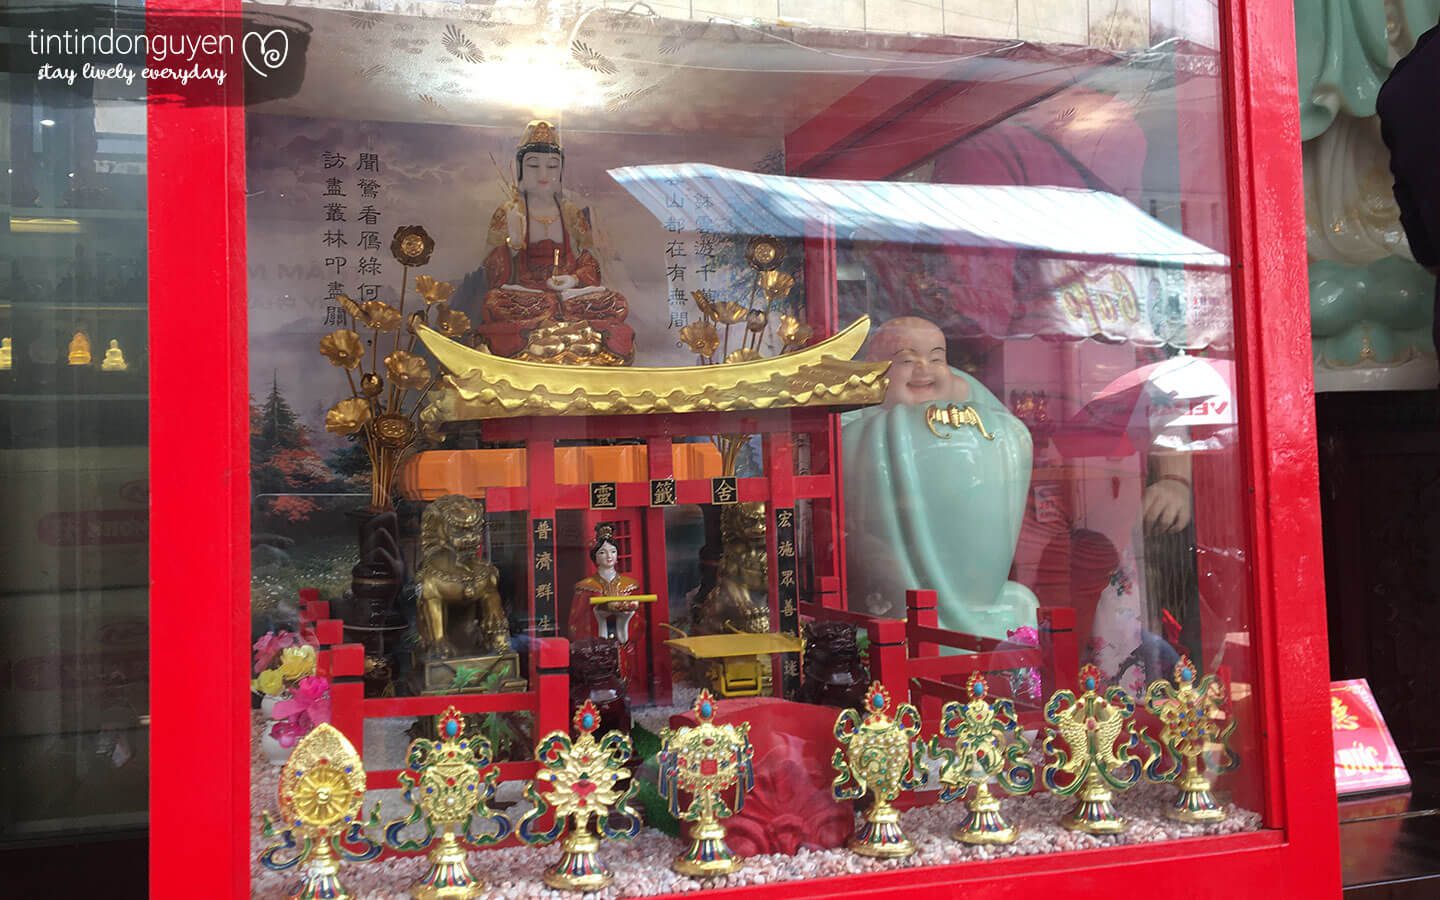 Mặt trước máy xin xăm tại chùa Vạn Phật với hình một ngồi chùa nhỏ mô hình có phật ngồi trên và cung nữ lấy xăm